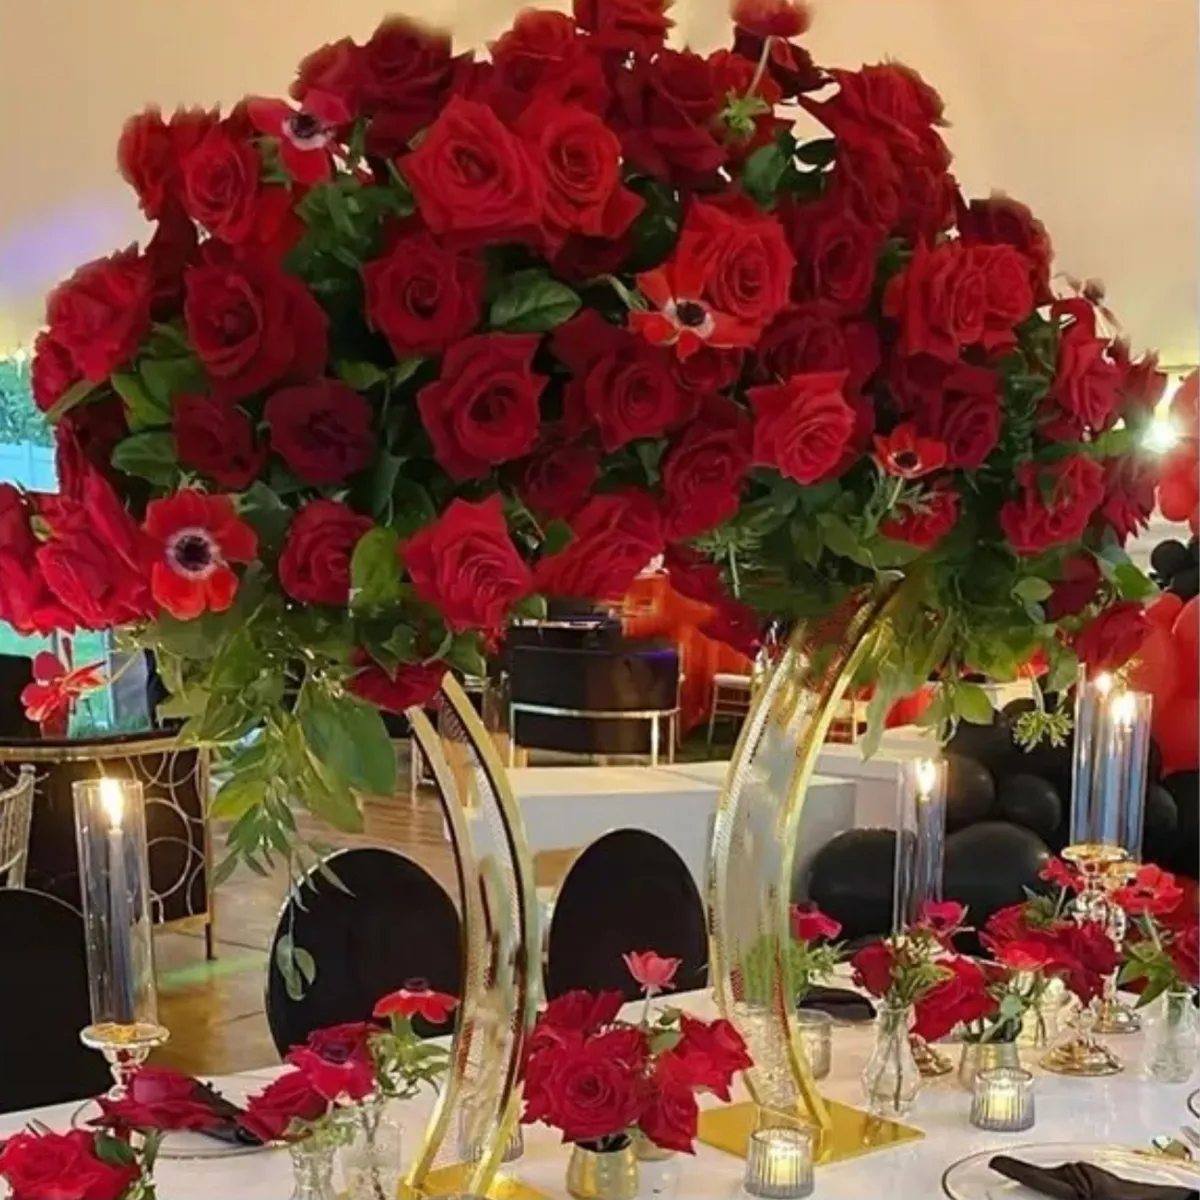 Dekorasyon dekorasyon sıcak lüks beyaz yapay çiçekler ile kemer düğün masası centerpiece imke752